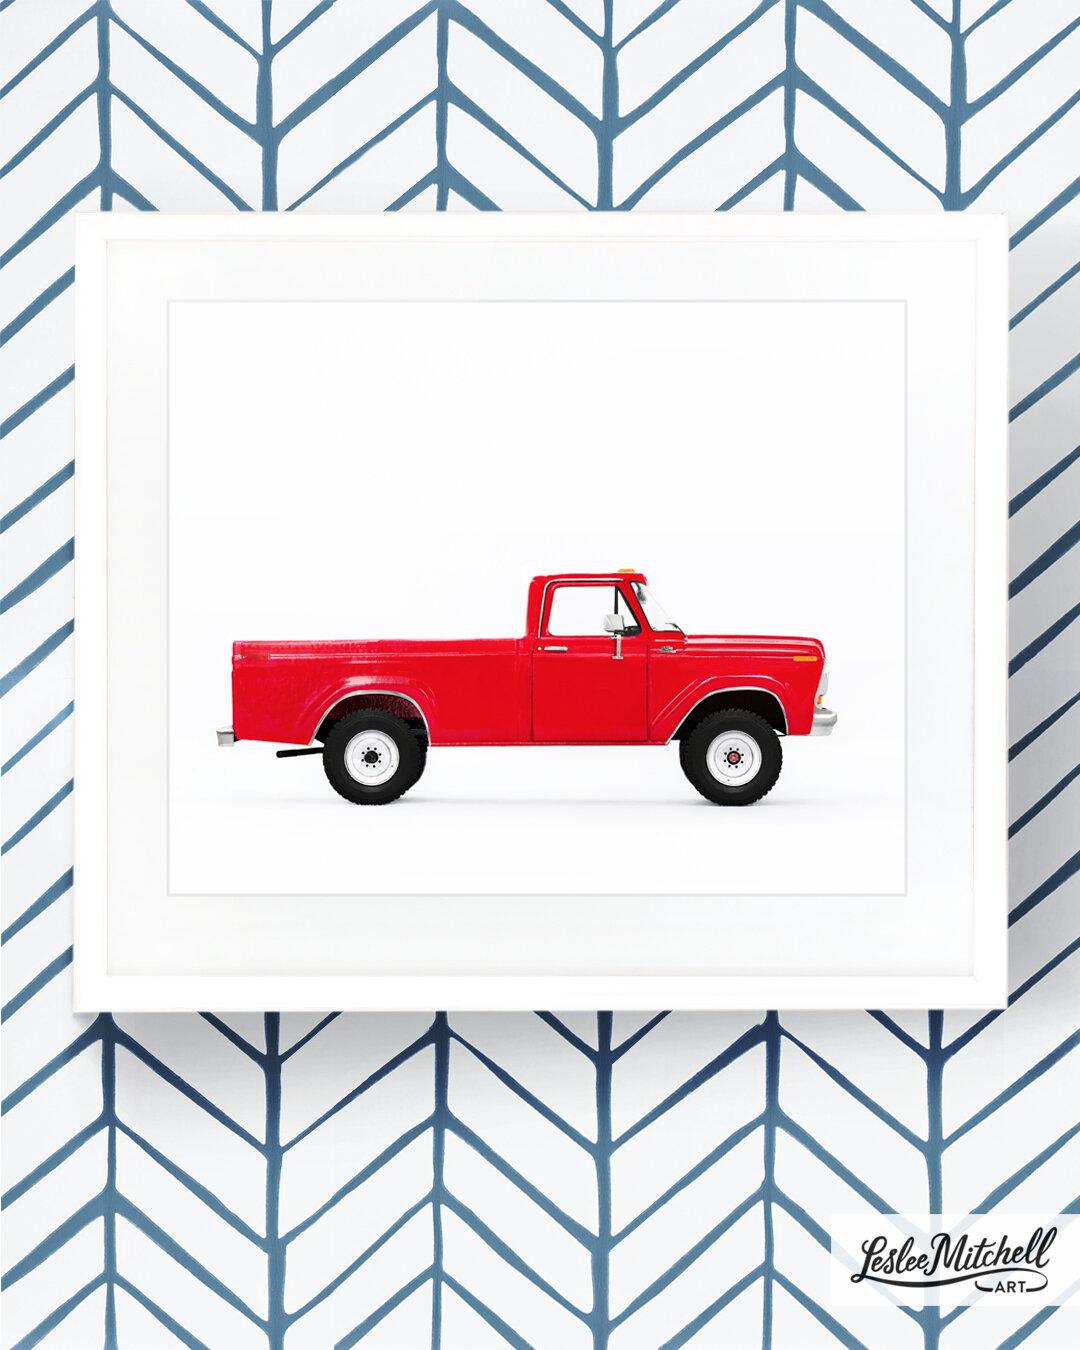 Car Series - Vintage Red Truck